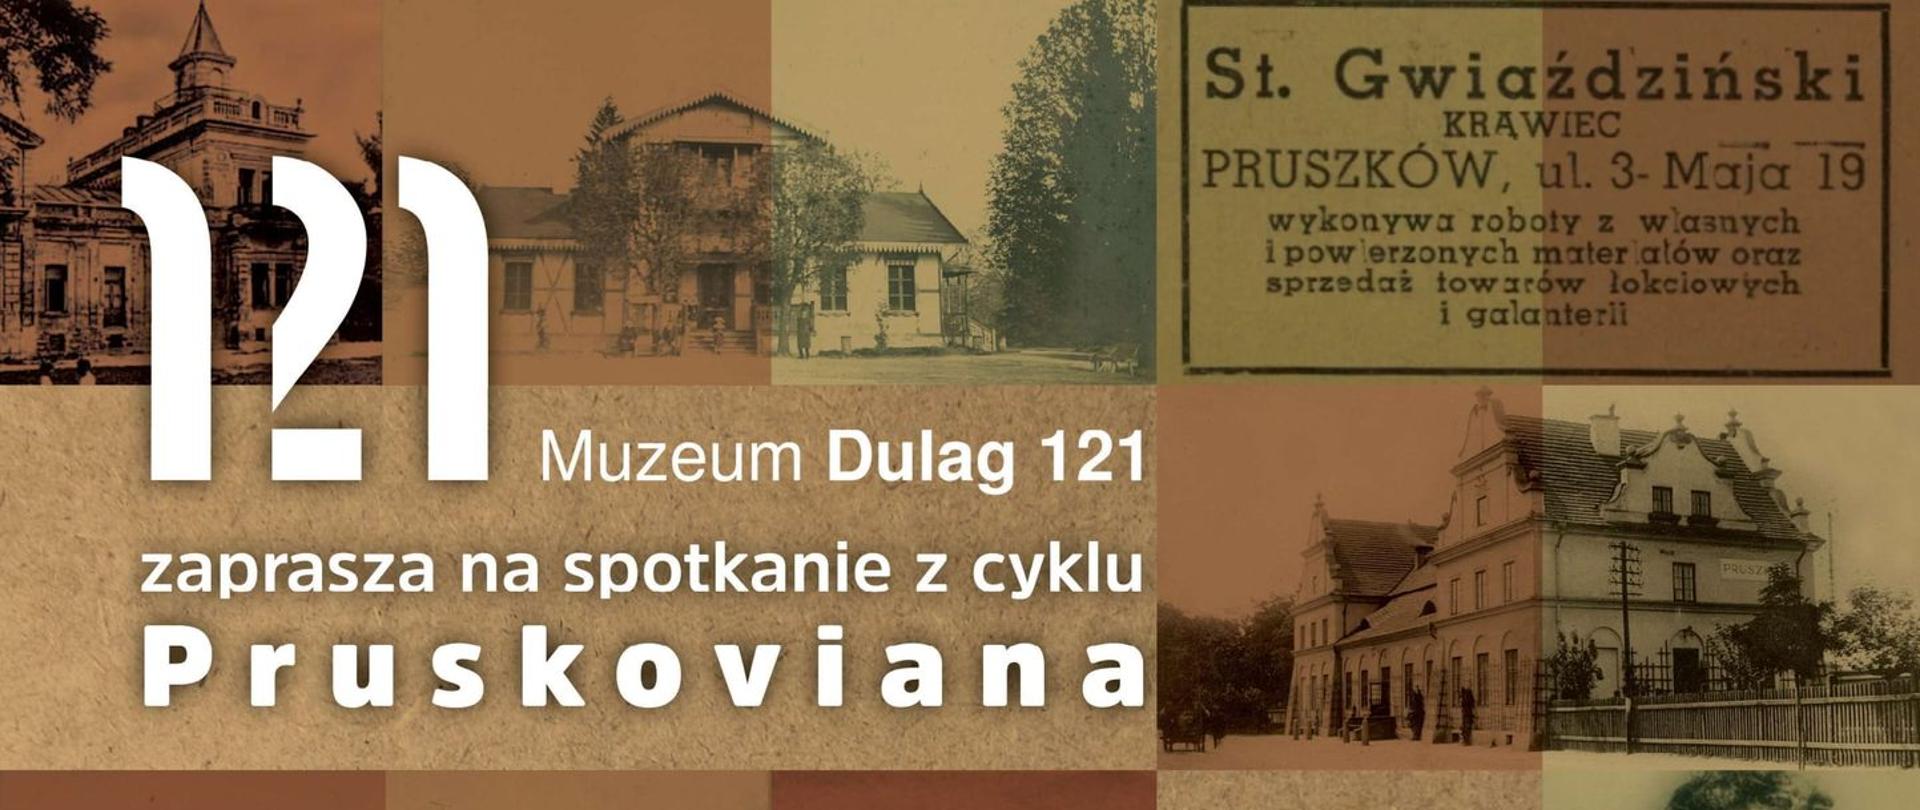 Szpitale wojenne w Pruszkowie. Wrzesień 1939
– wykład dr. Mirosława Wawrzyńskiego w Muzeum Dulag 121 - plakat